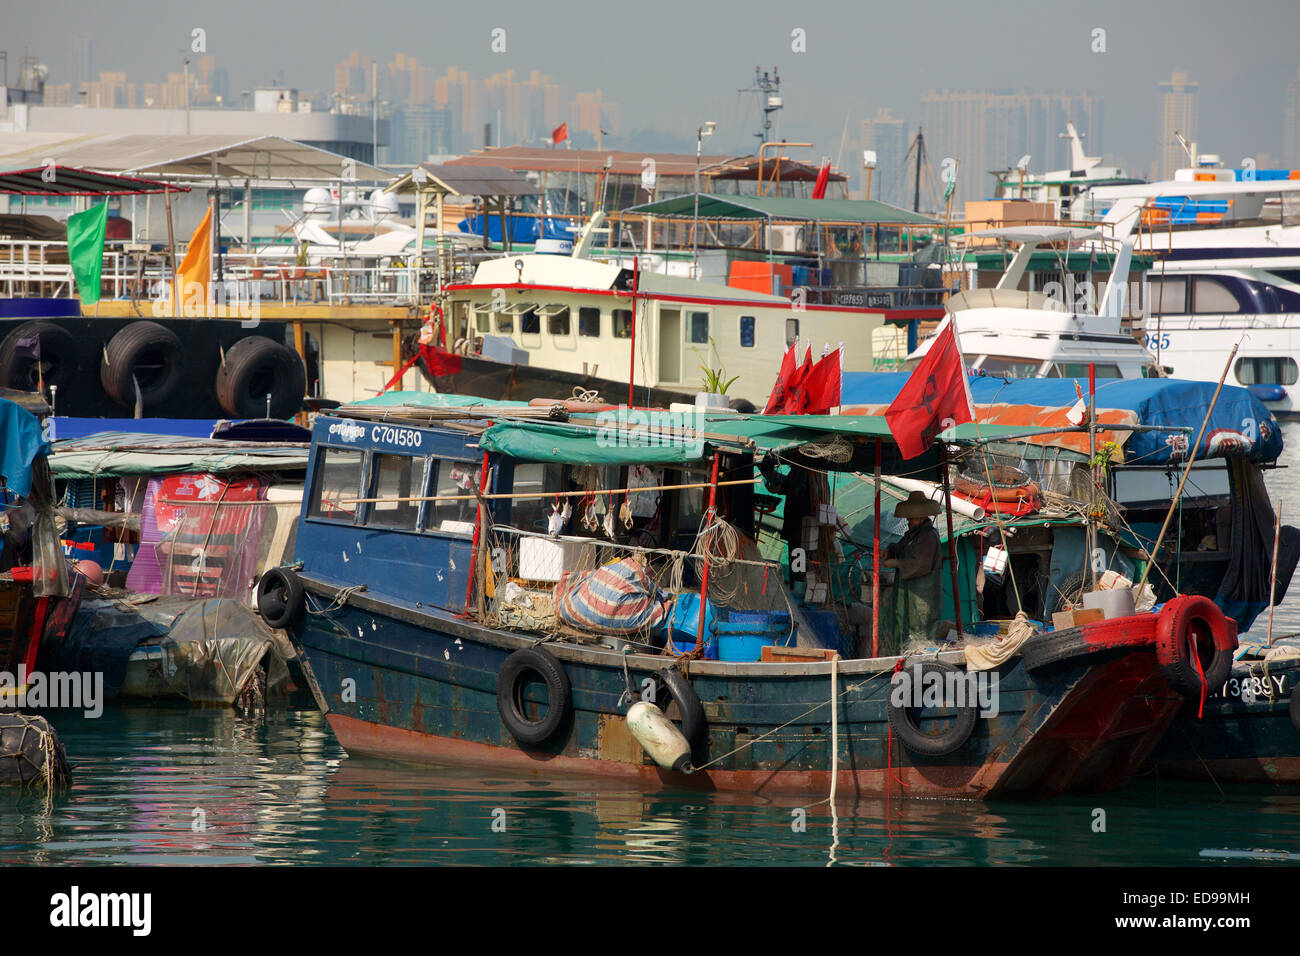 Hafen von Hongkong HK vollgestopft gewissermaßen voll Wasser mit einer Sammlung von verschiedenen Booten in einen kleinen Raum. Stockfoto